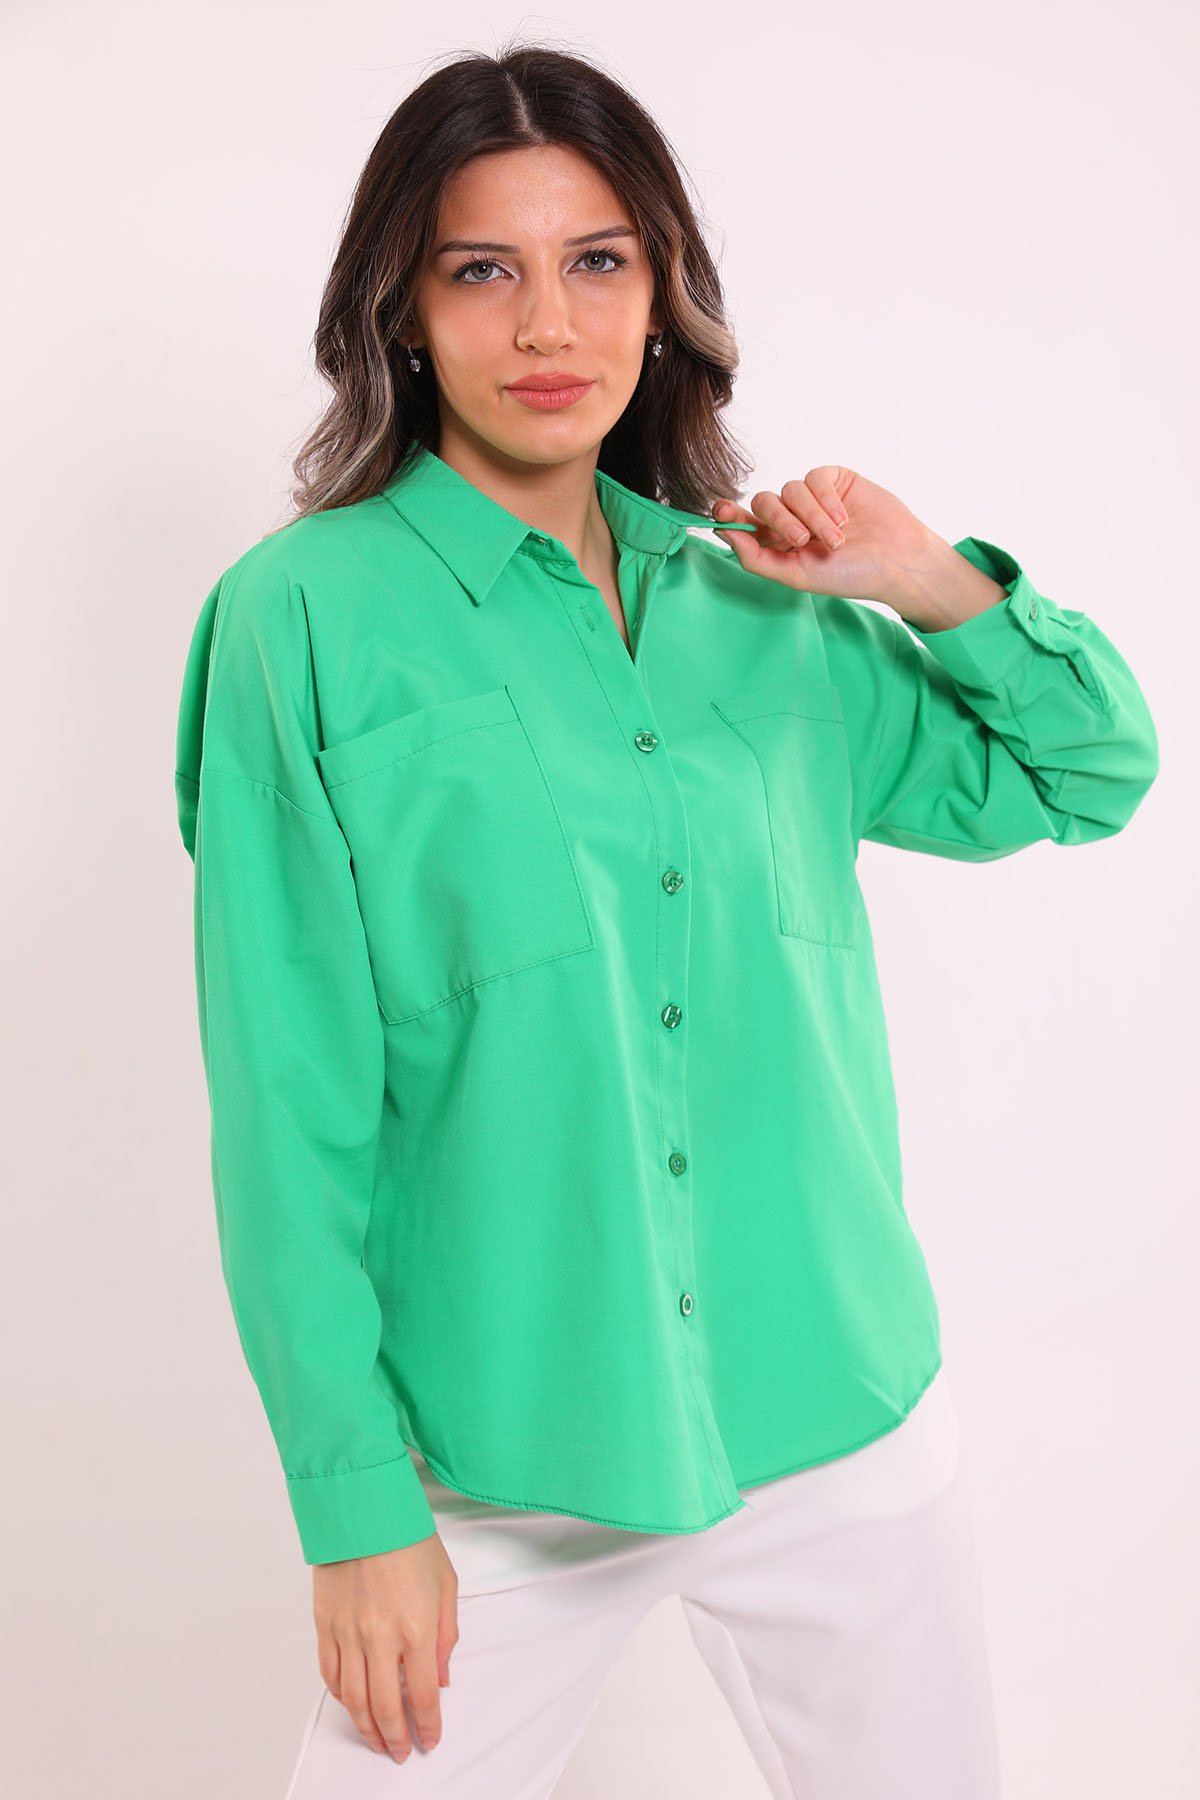 Kadın Çift Cepli Salaş Gömlek Yeşil 498147 - tozlu.com